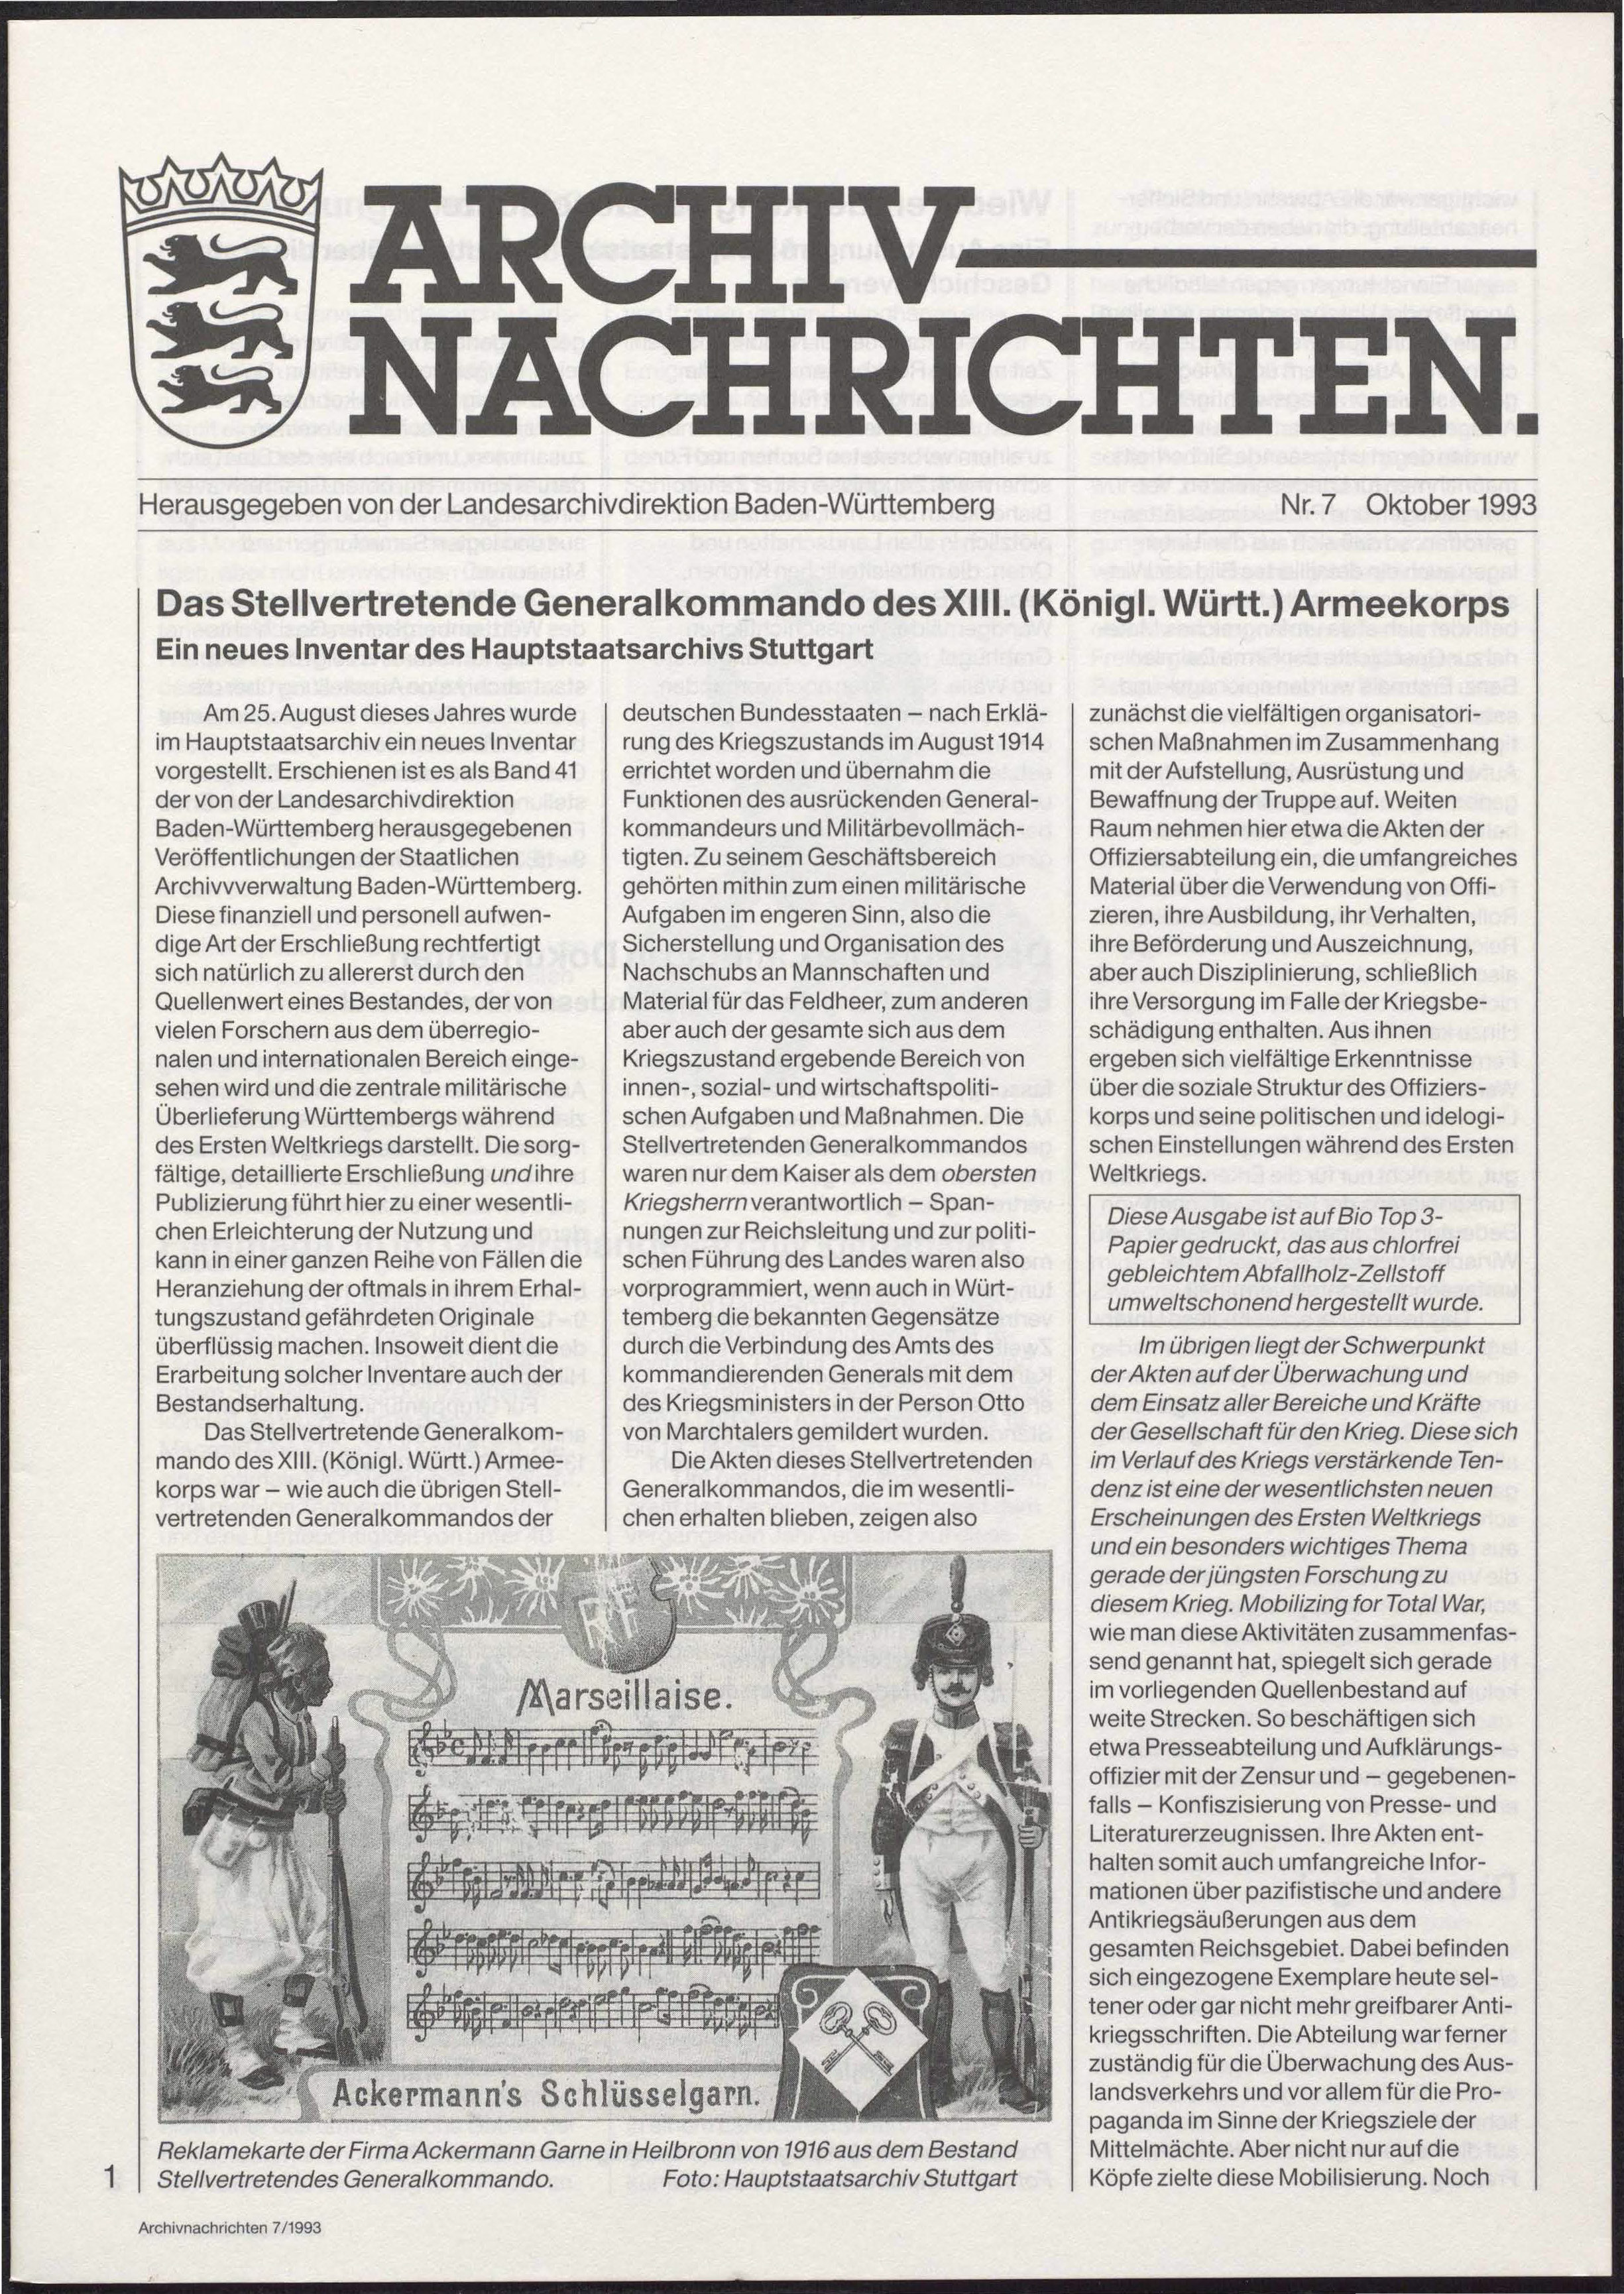                     Ansehen Nr. 7 (1993): Archivnachrichten
                